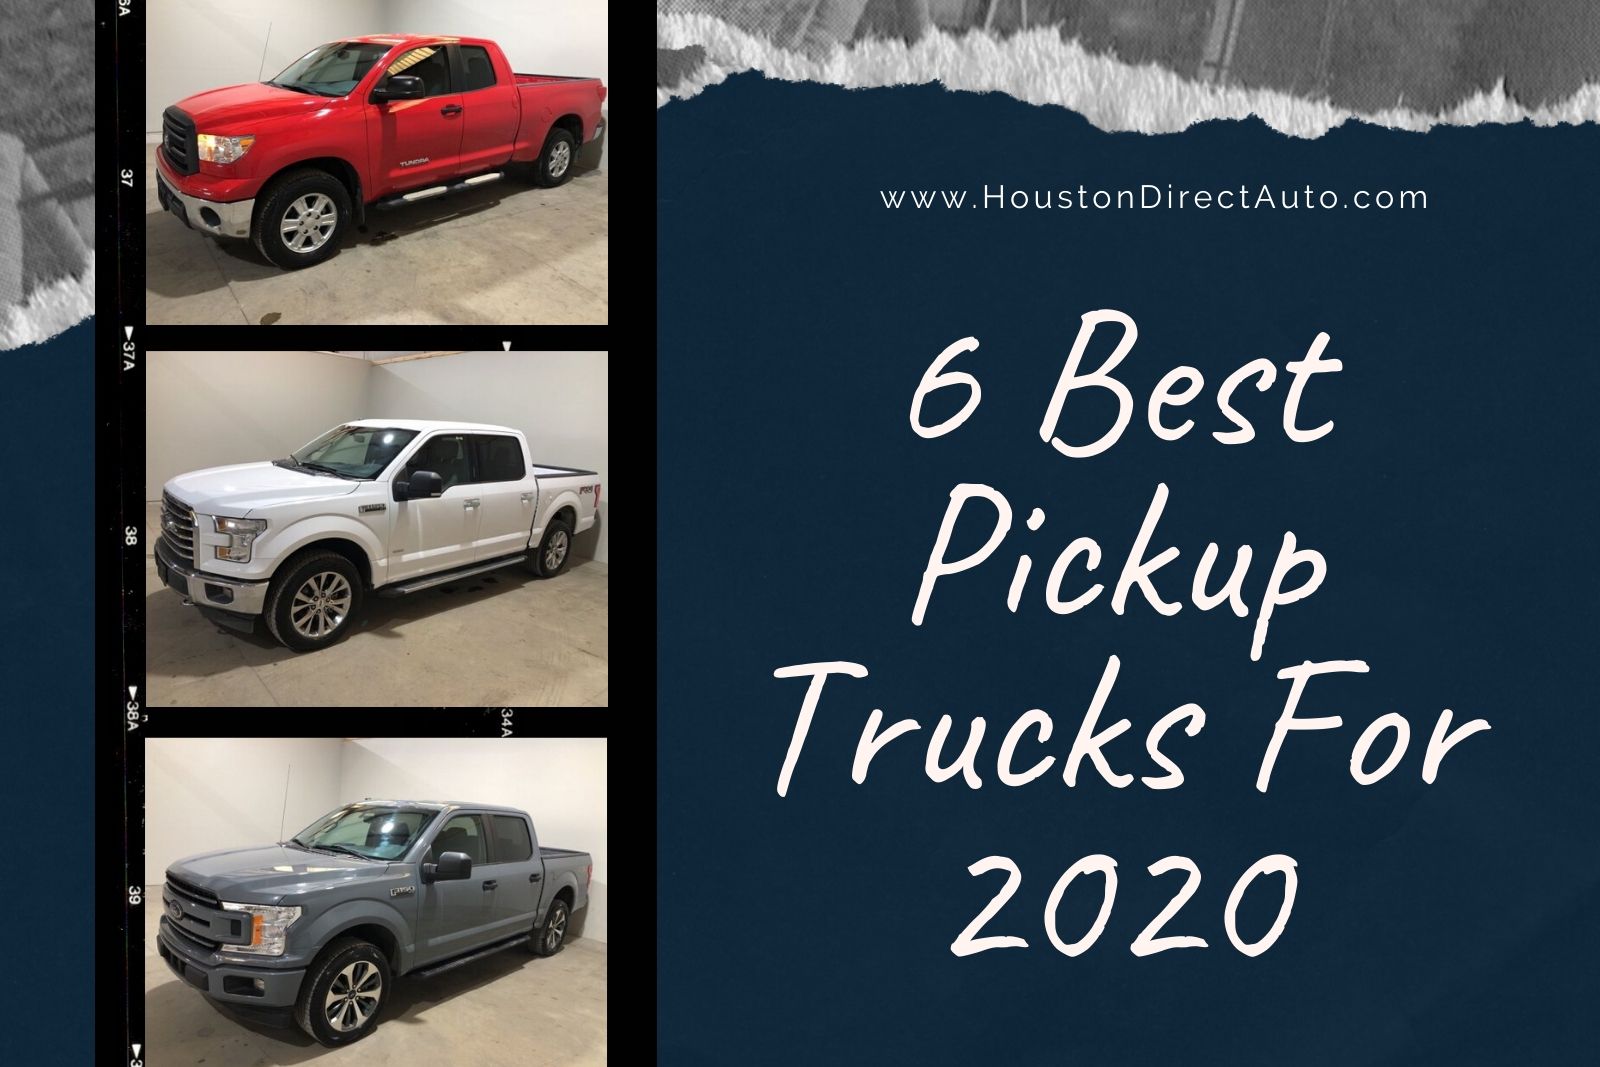 6 Best Pickup Trucks For 2020